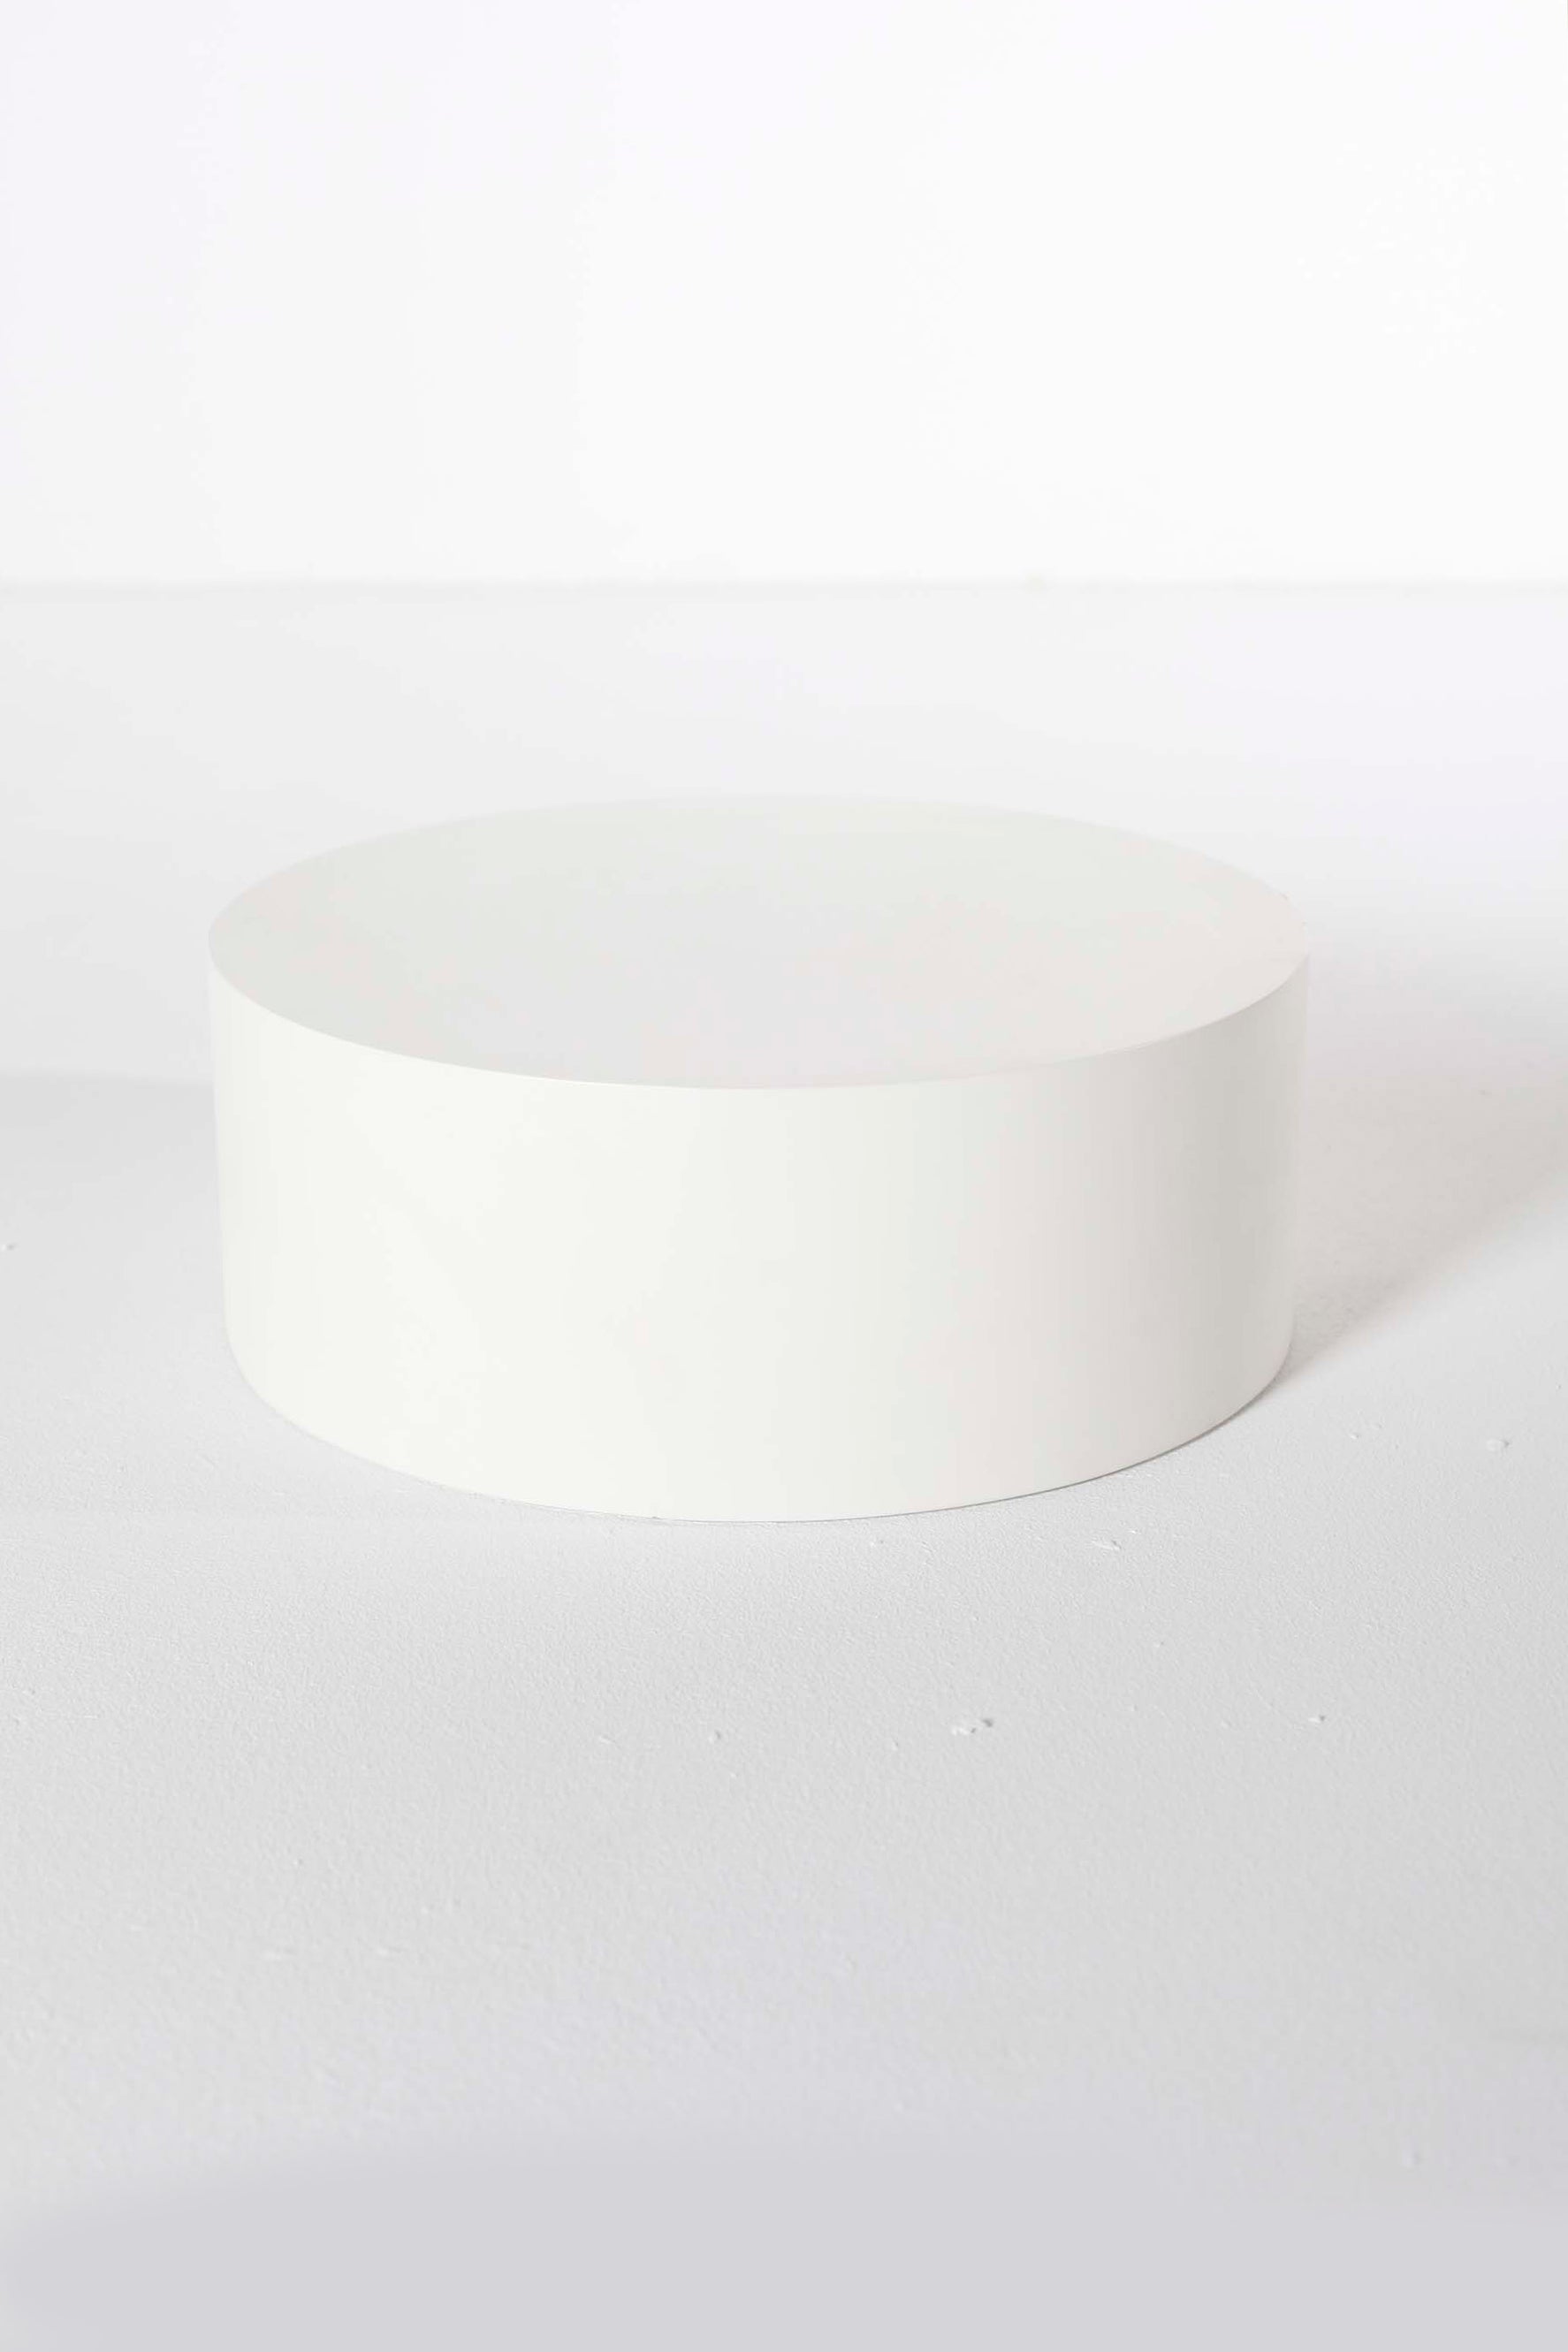 White Cylinder Block (40x25cm)